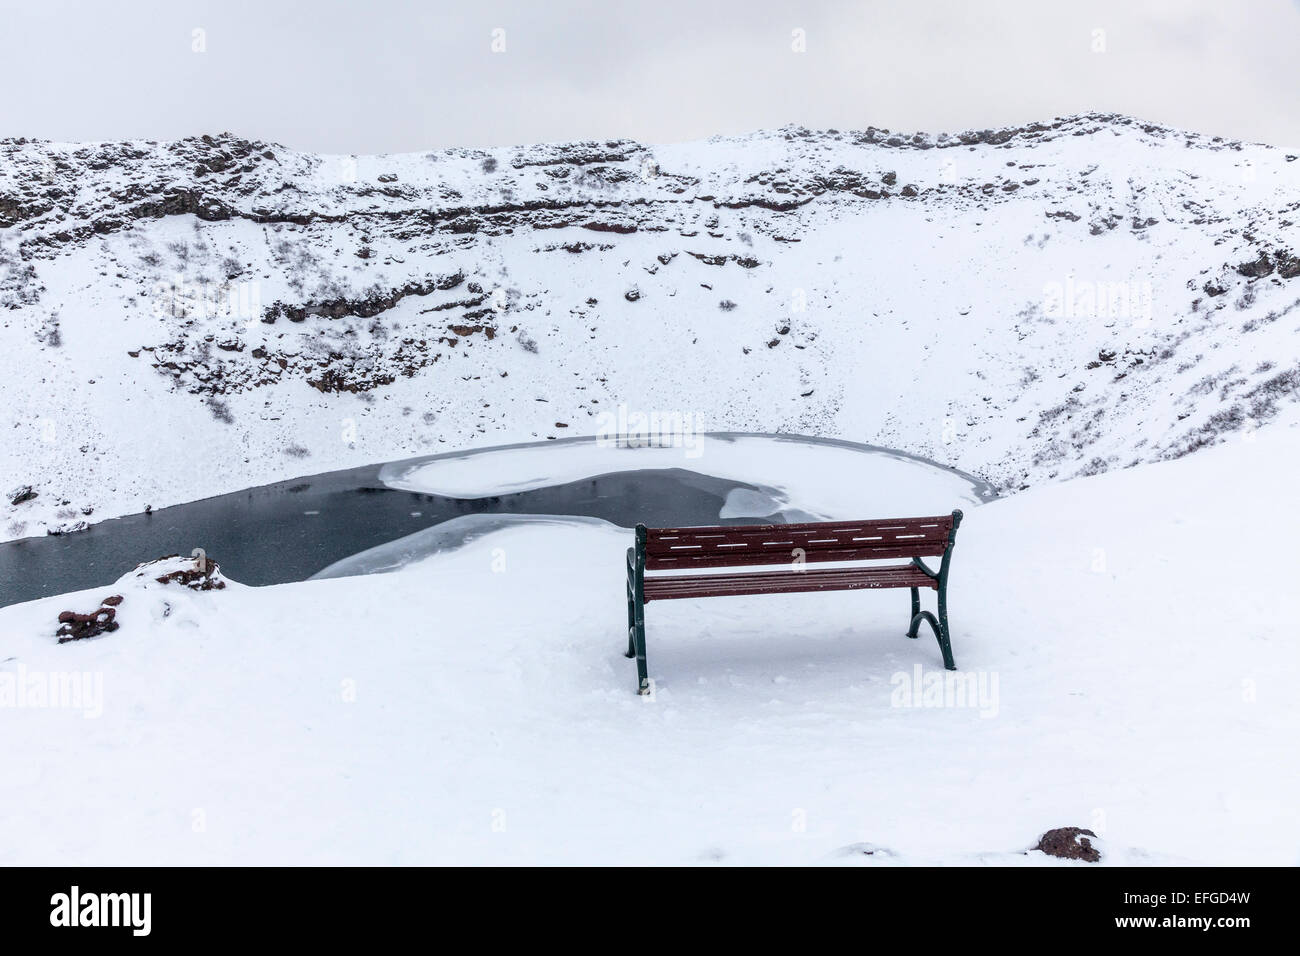 Die felsigen Caldera von kerid (oder Kerith) Vulkan und gefrorene Kratersee in Island, ein beliebtes Touristenziel, im Winter bei Schnee Dusche Stockfoto